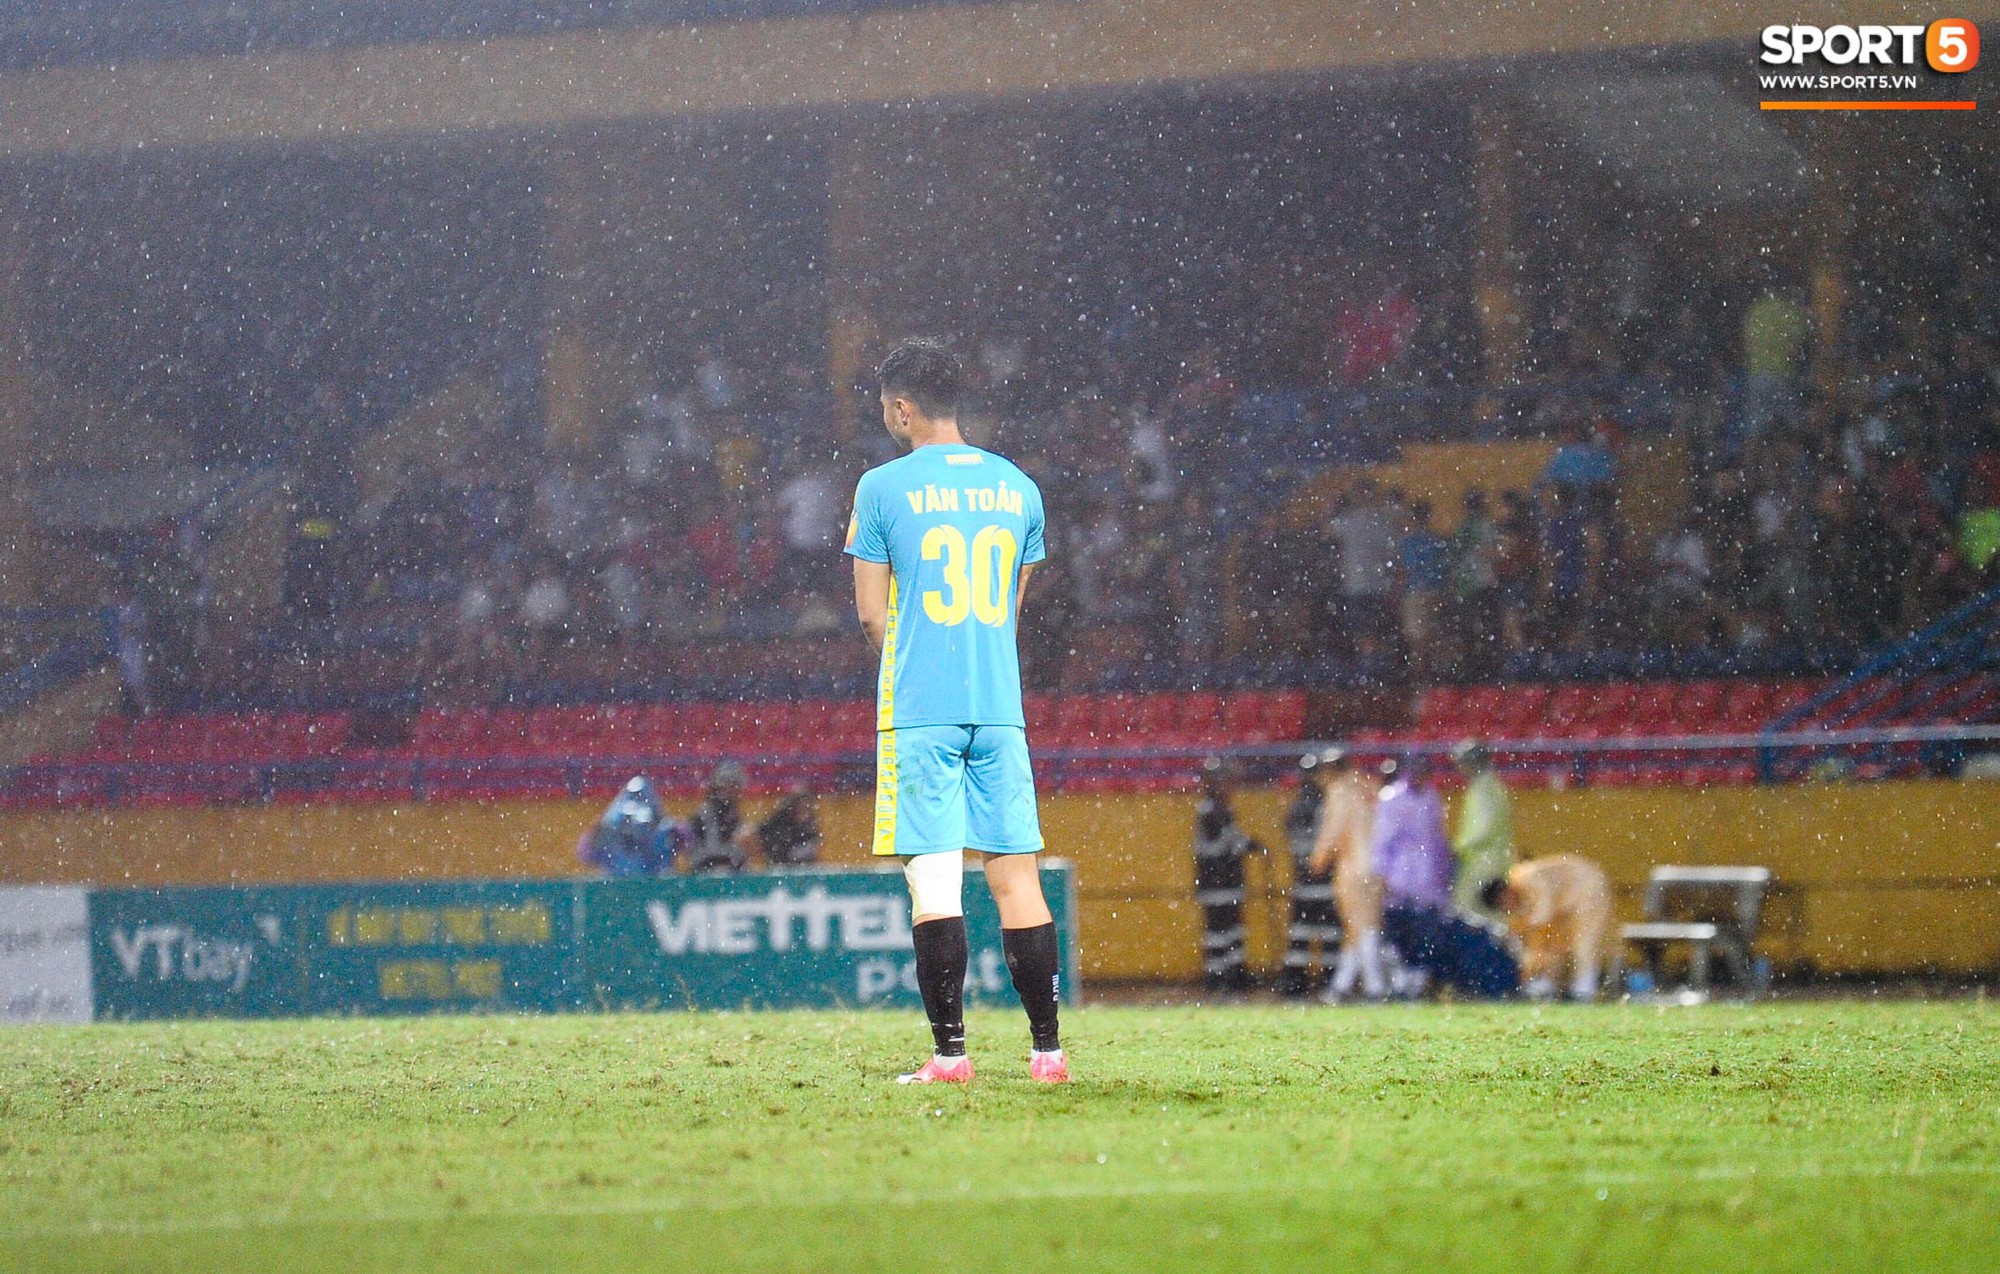 Thủ môn trẻ tài năng của U23 Việt Nam nhận lời cảnh báo sau trận thuỷ chiến trên sân Hàng Đẫy - Ảnh 3.